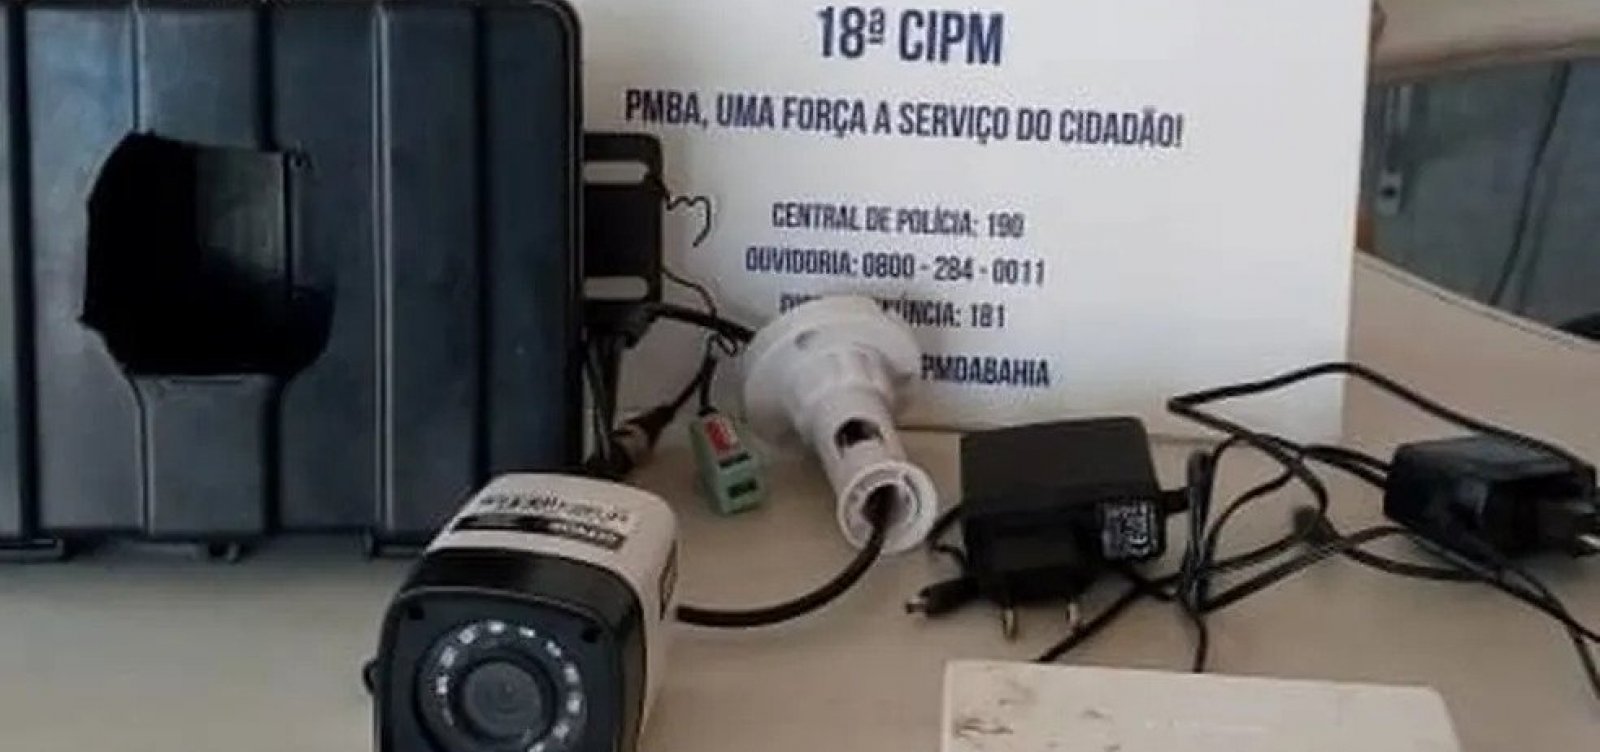 PM encontra câmera camuflada instalada em poste no bairro de Periperi